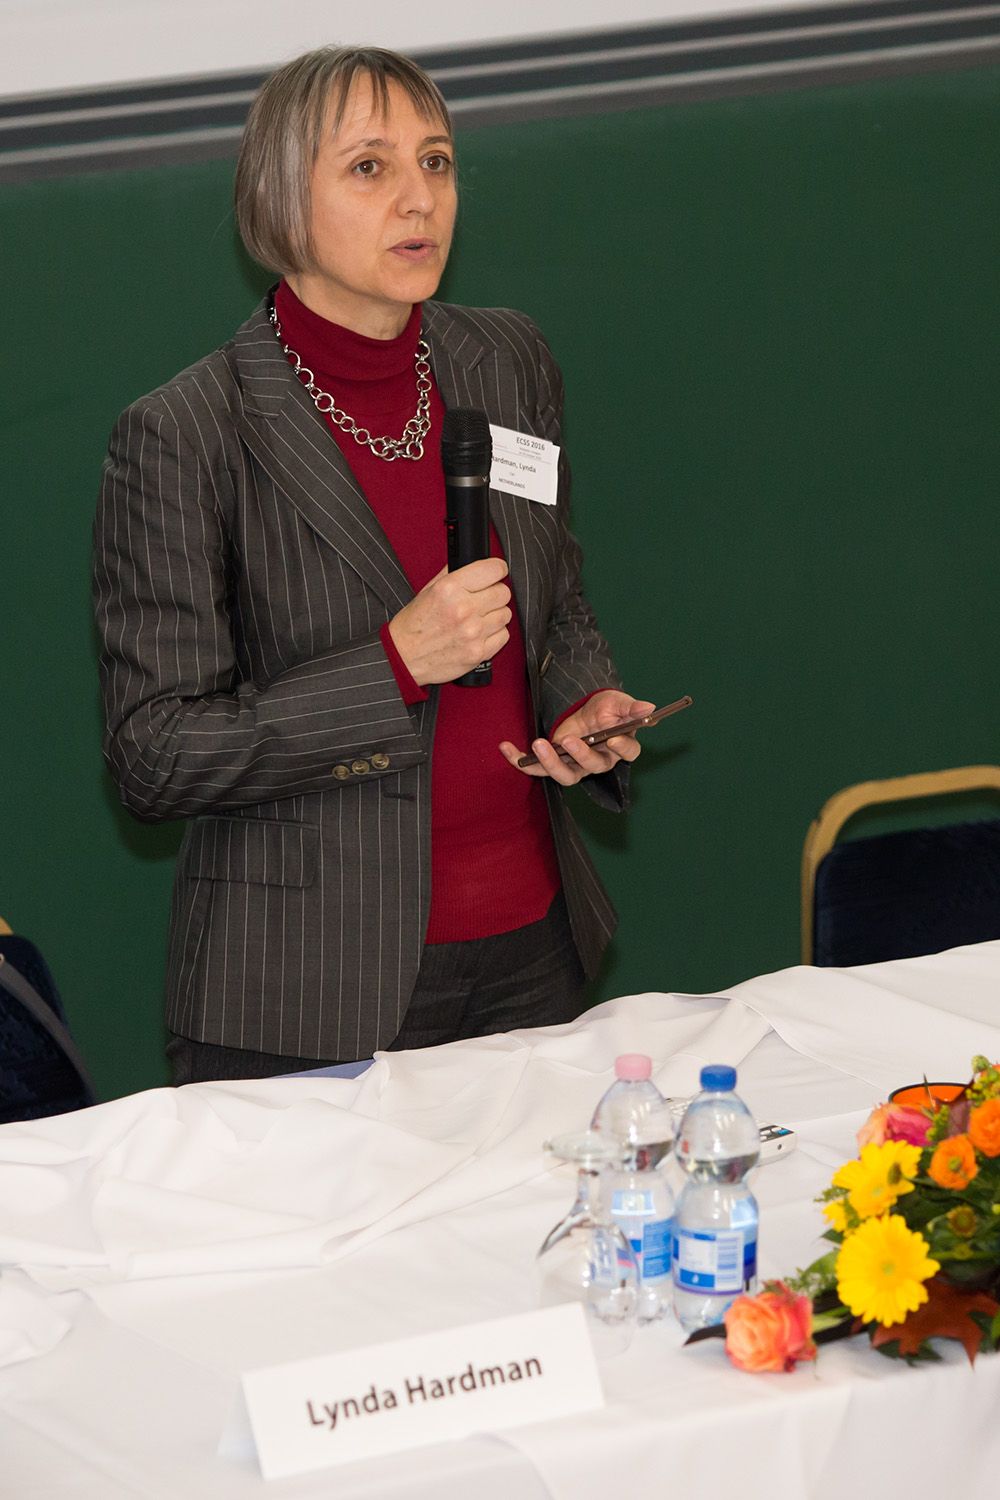 Lynda Hardman, ECSS 2016 Chair